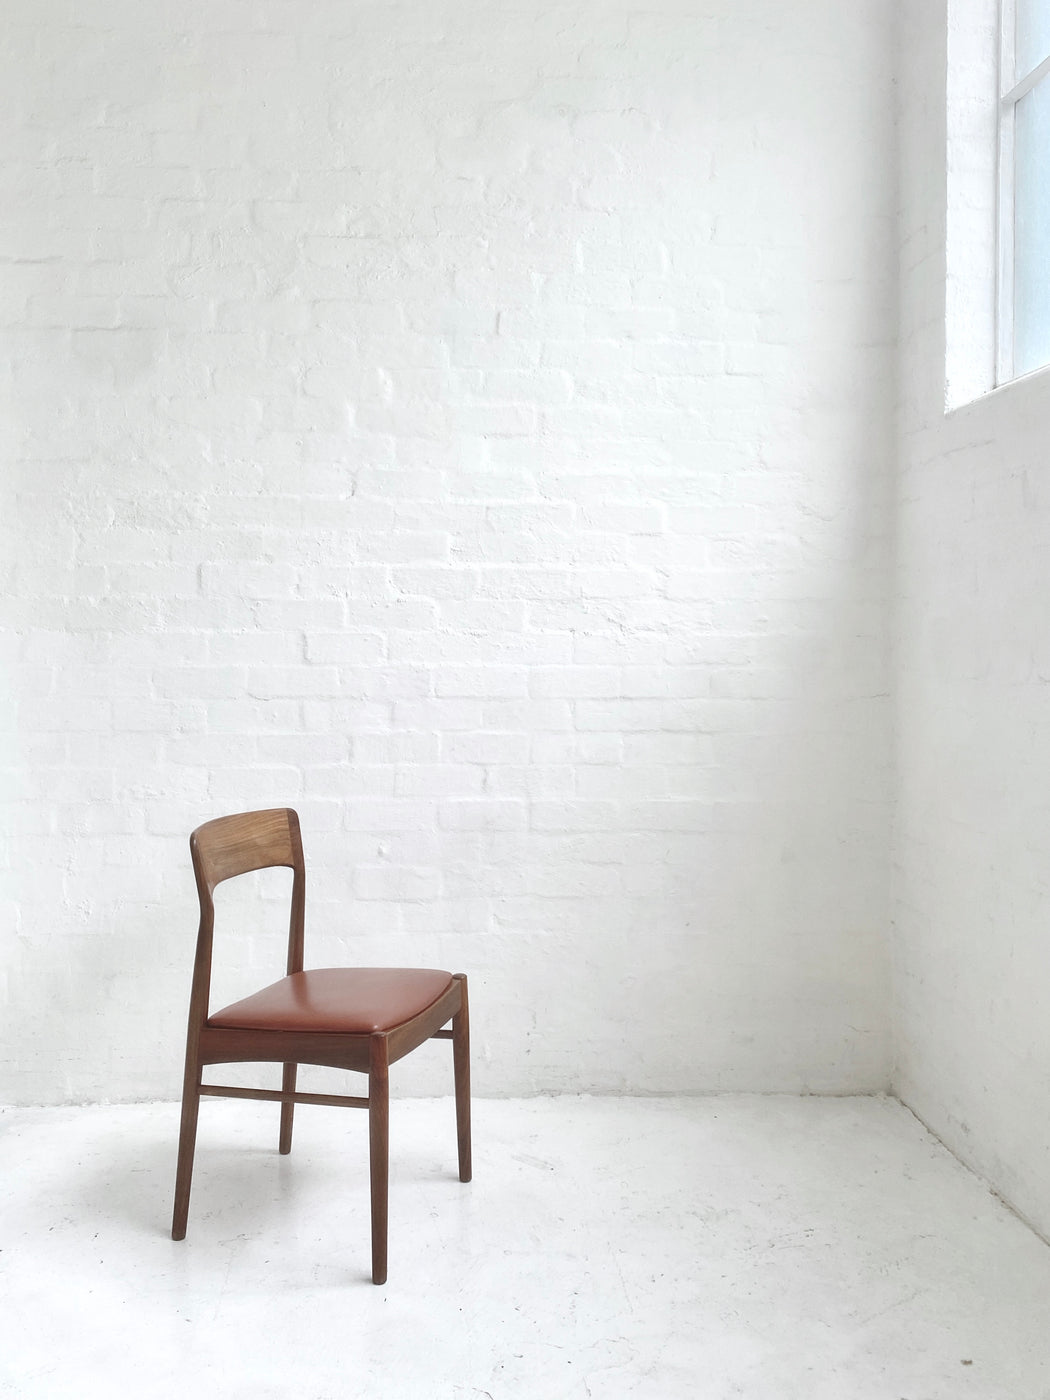 Danish Rosewood Chair